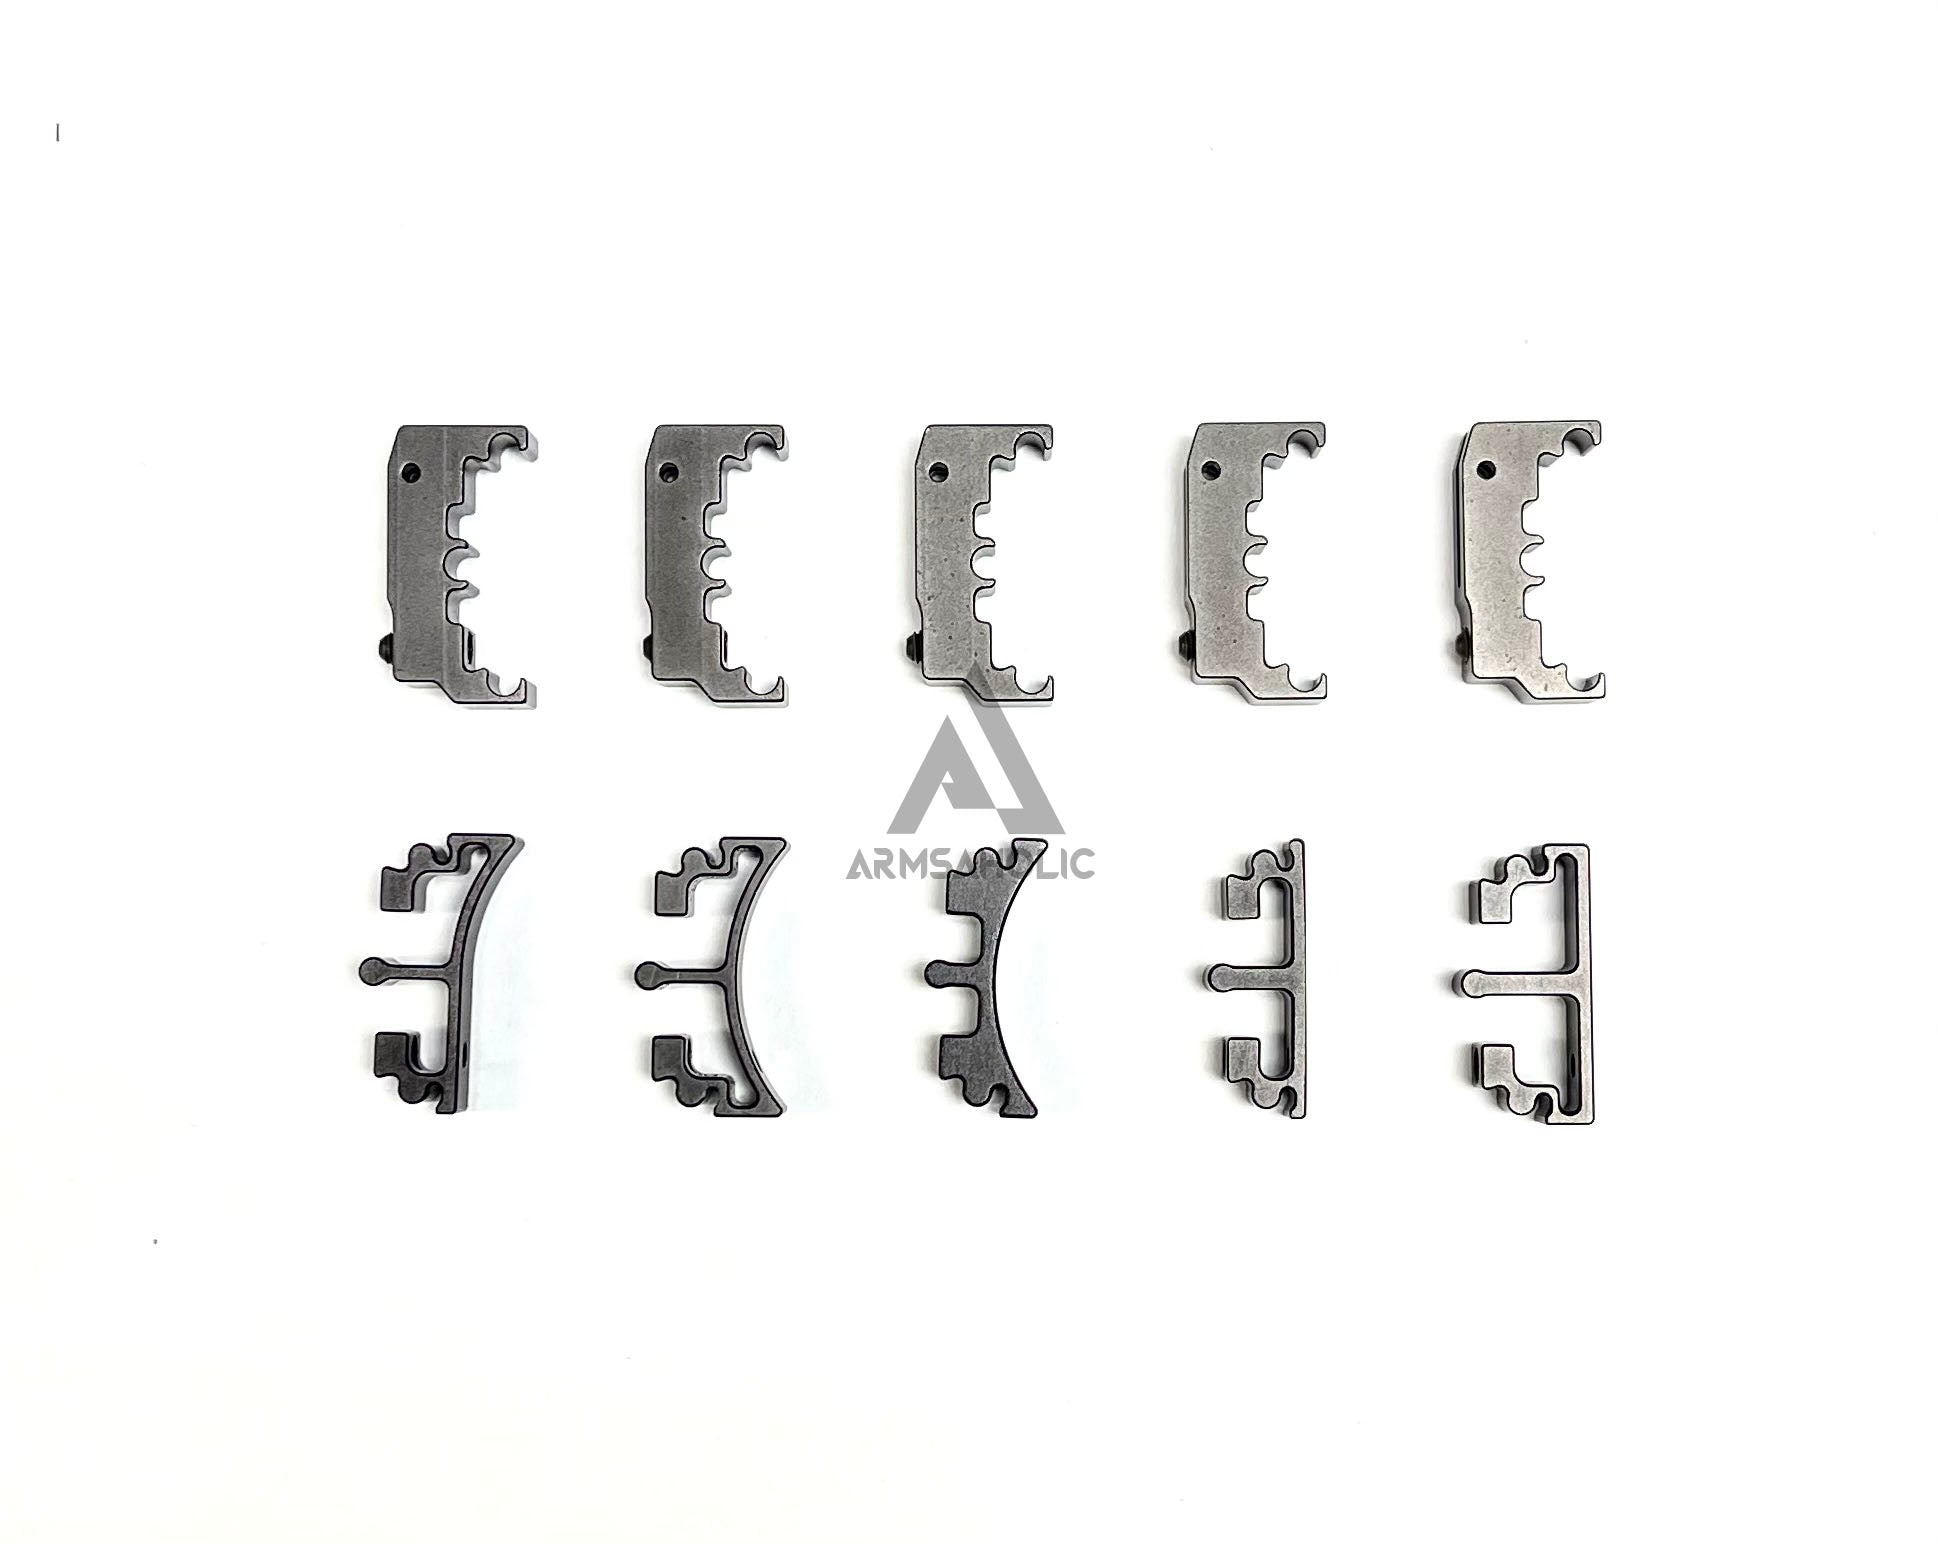 Nova CNC Aluminum Puzzle Trigger Set for Tokyo Marui HI-CAPA GBB Series - Black